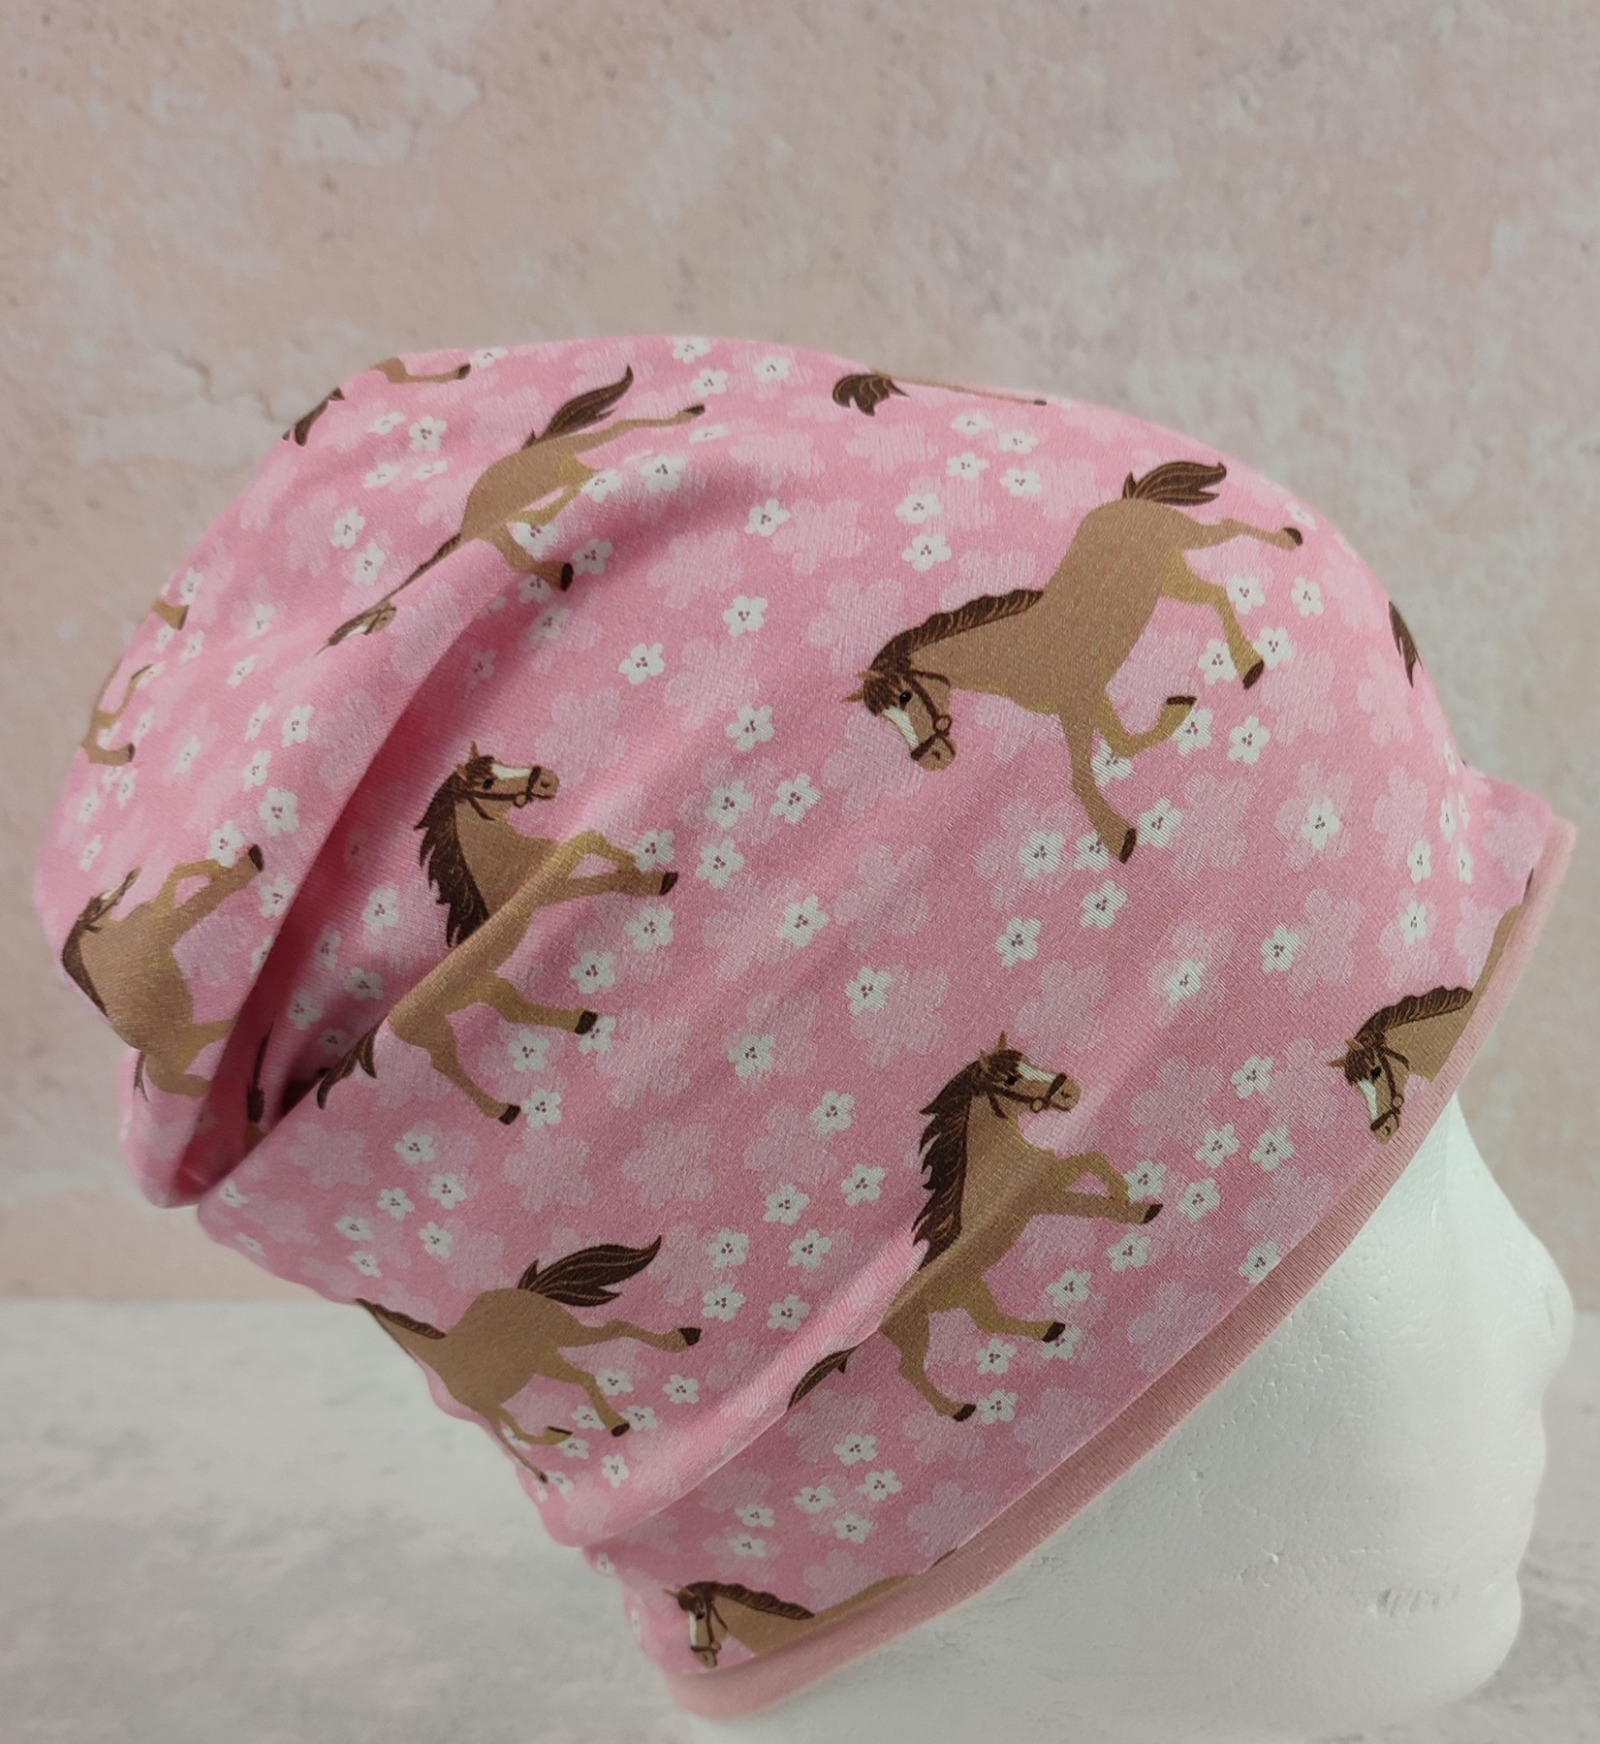 Beanie für kleine Mädchen - Kindermütze aus Jersey in rosa mit Pferden und Blumen Größe ca 44 - 48 cm Kopfumfang 2